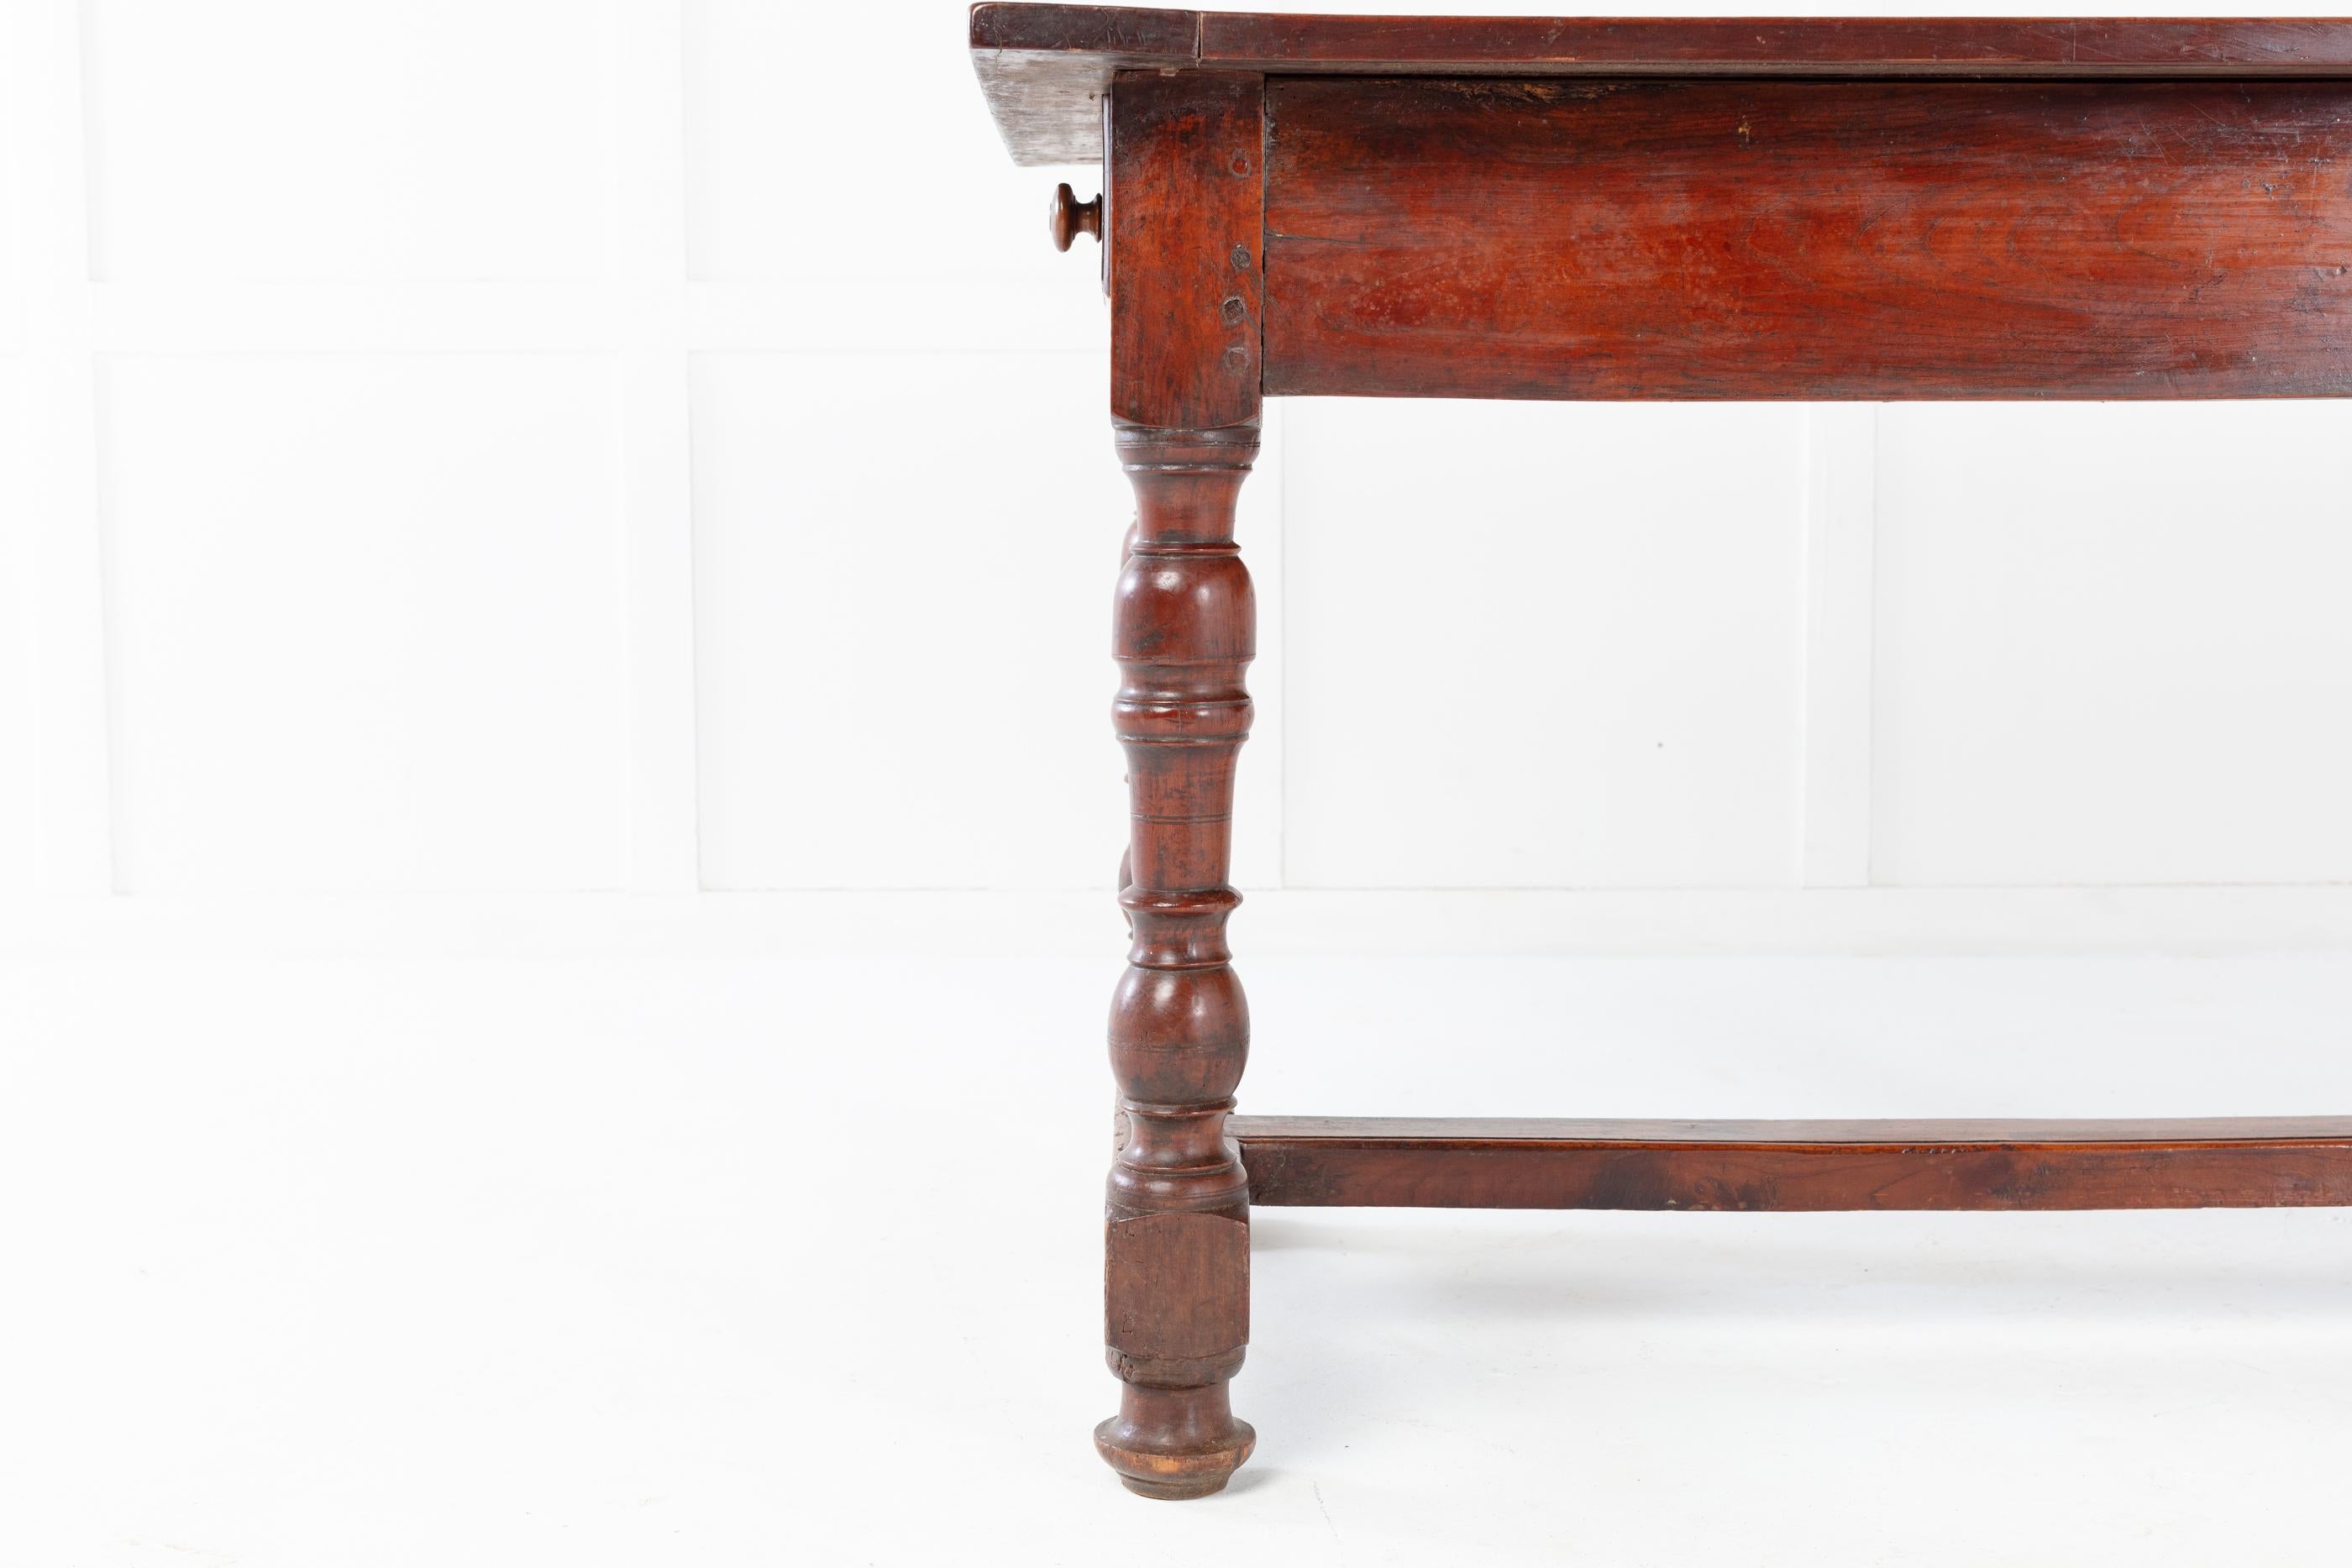 Französischer Esstisch aus Kirschholz des 18. Jahrhunderts mit zwei Schubladen, eine an jedem Ende, auf gedrechselten Beinen. Die mittlere Bahre und das mittlere Bein wurden aufgrund von Alter und Gebrauch irgendwann ersetzt.

Dieser Tisch hat